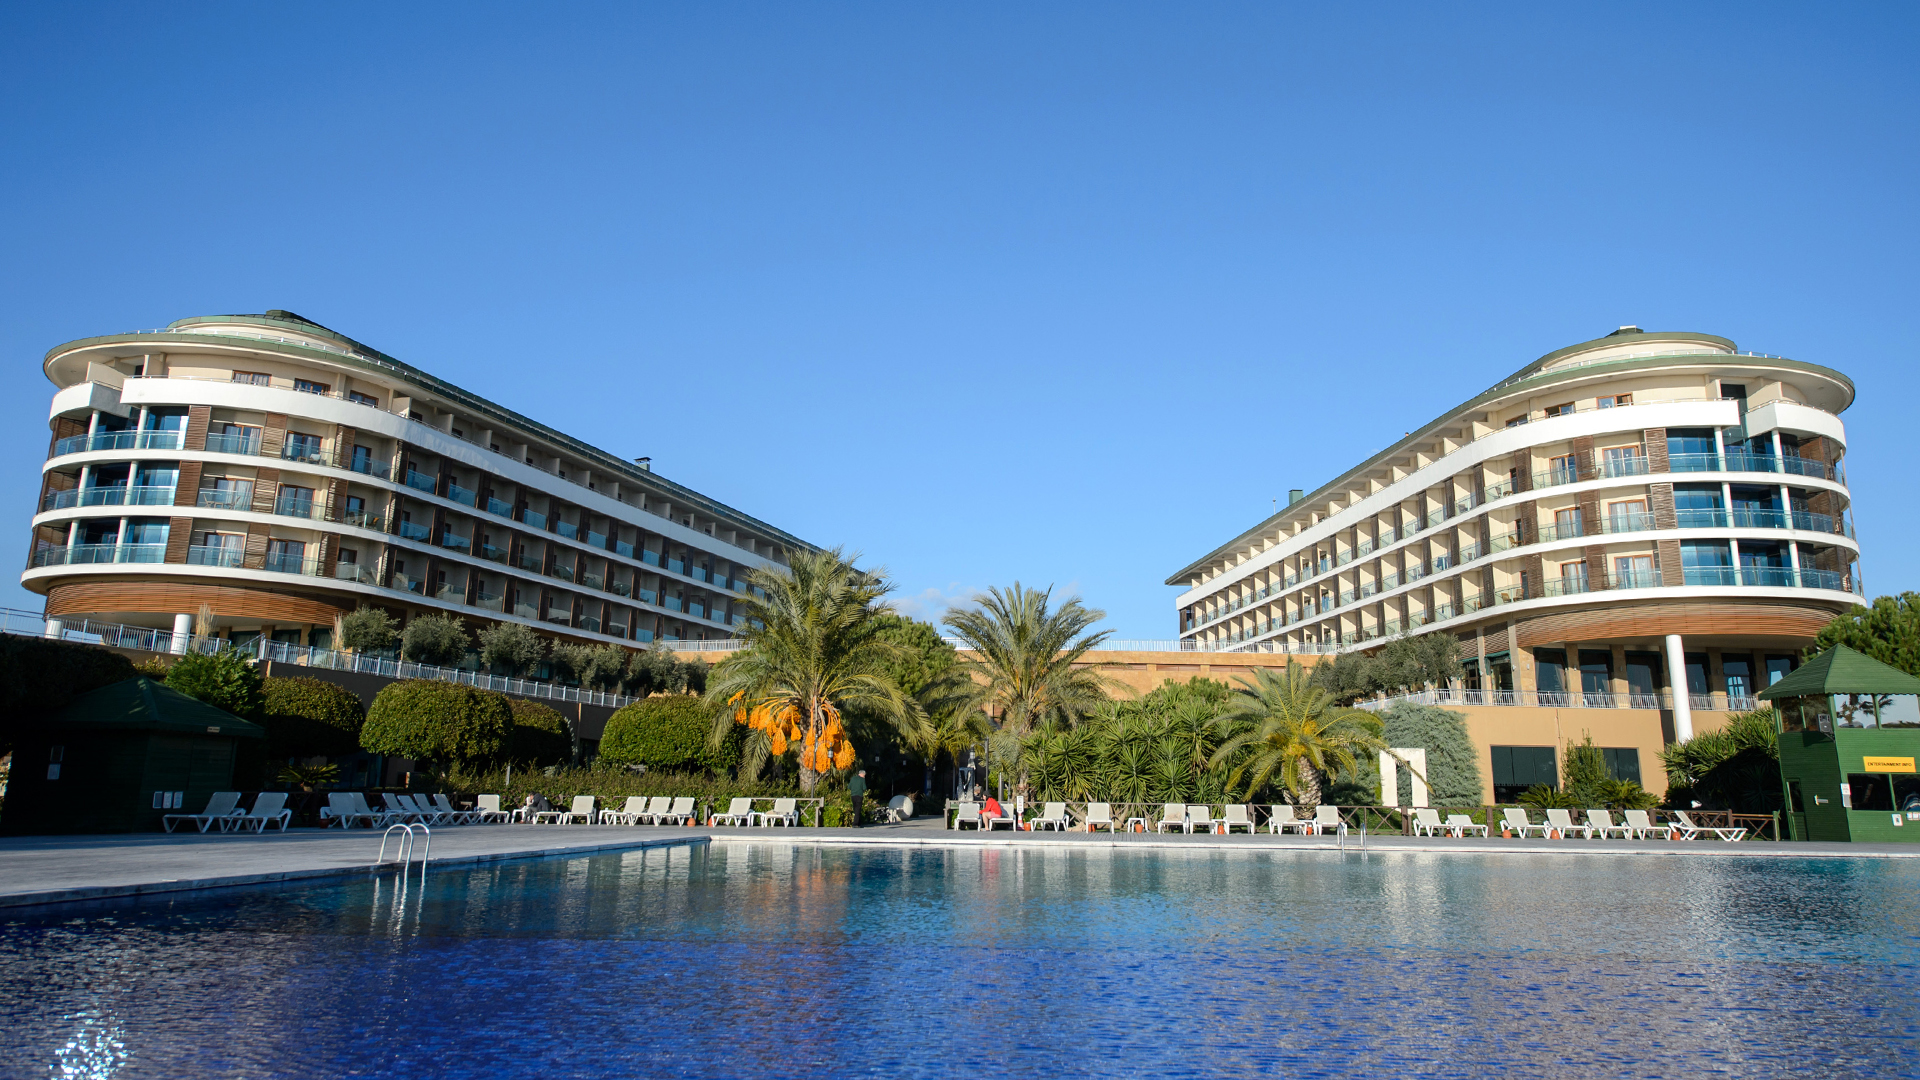 Hotel-Anlage in der Türkei | picture alliance / dpa